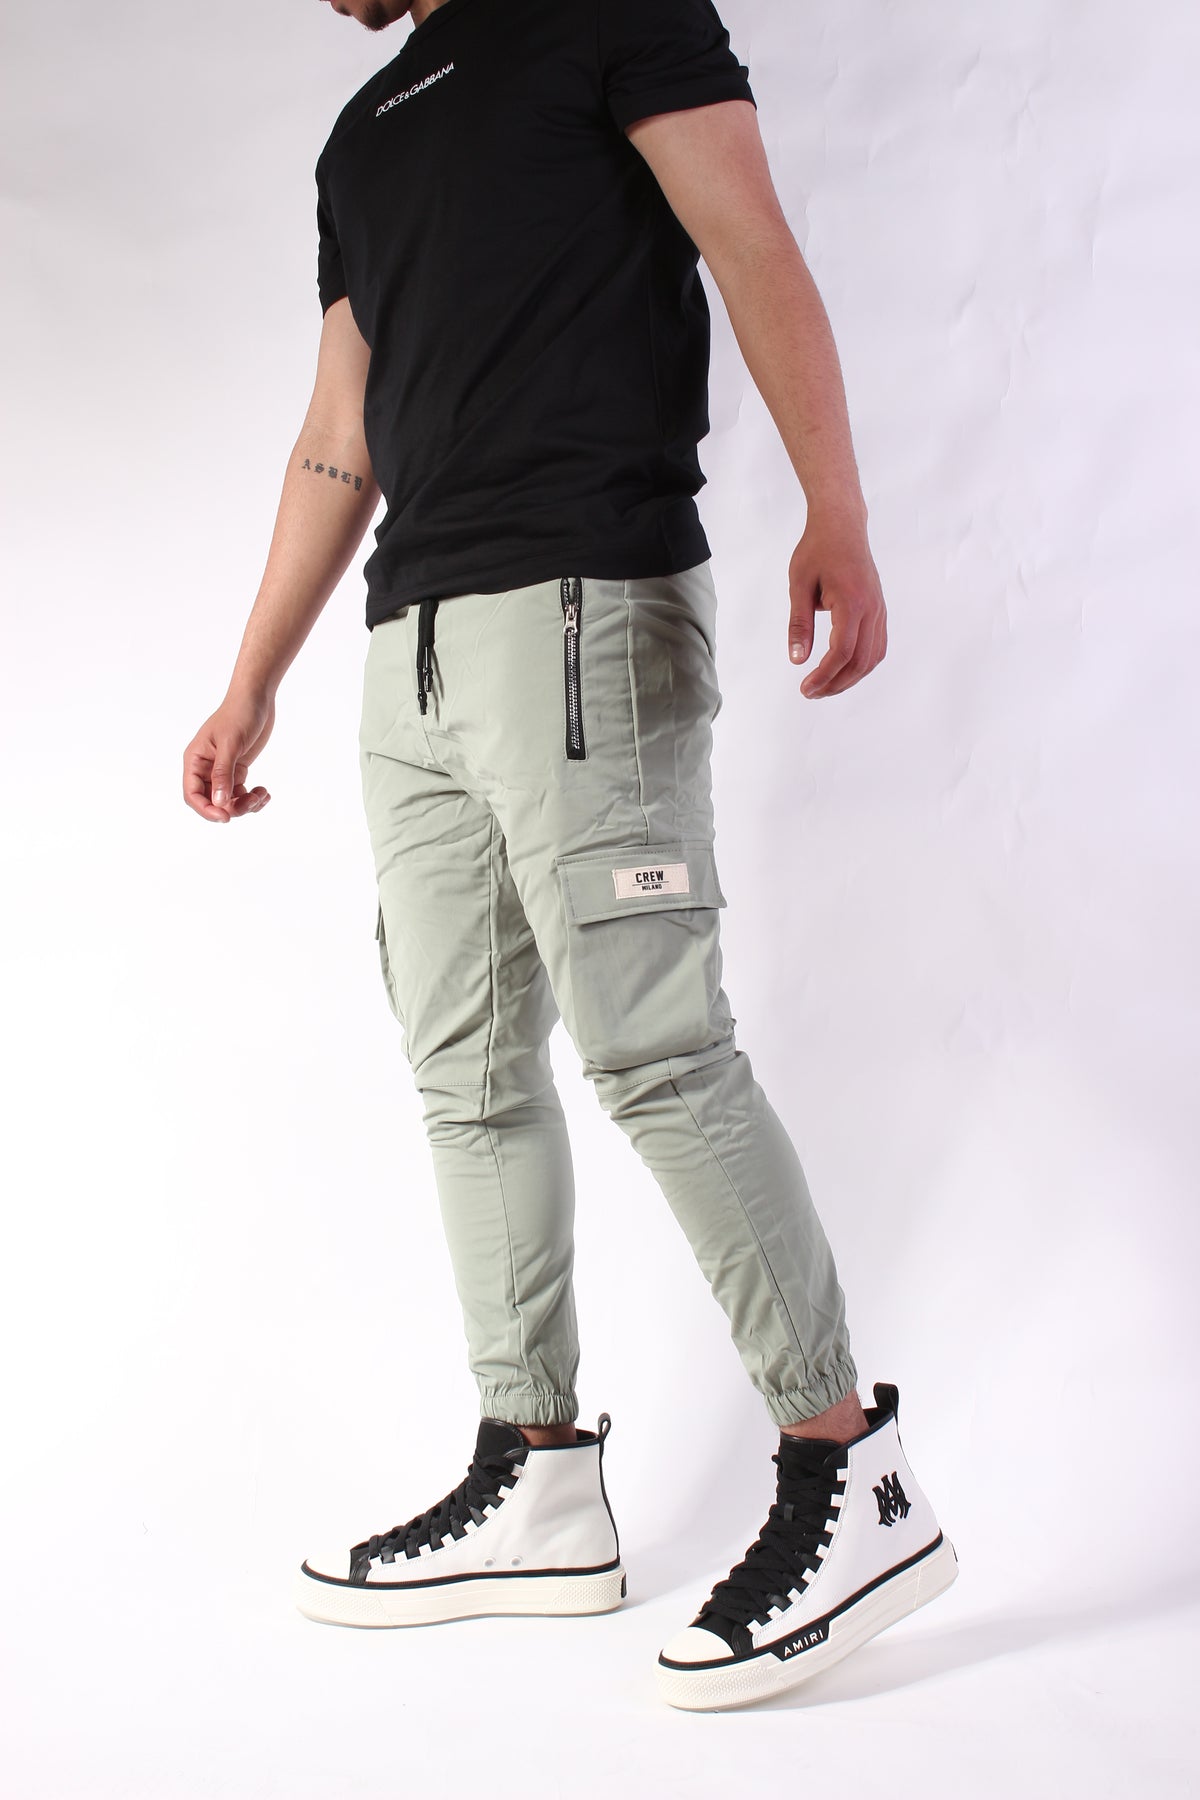 CREW Mint Green Cargo Pants Zipper Rubber